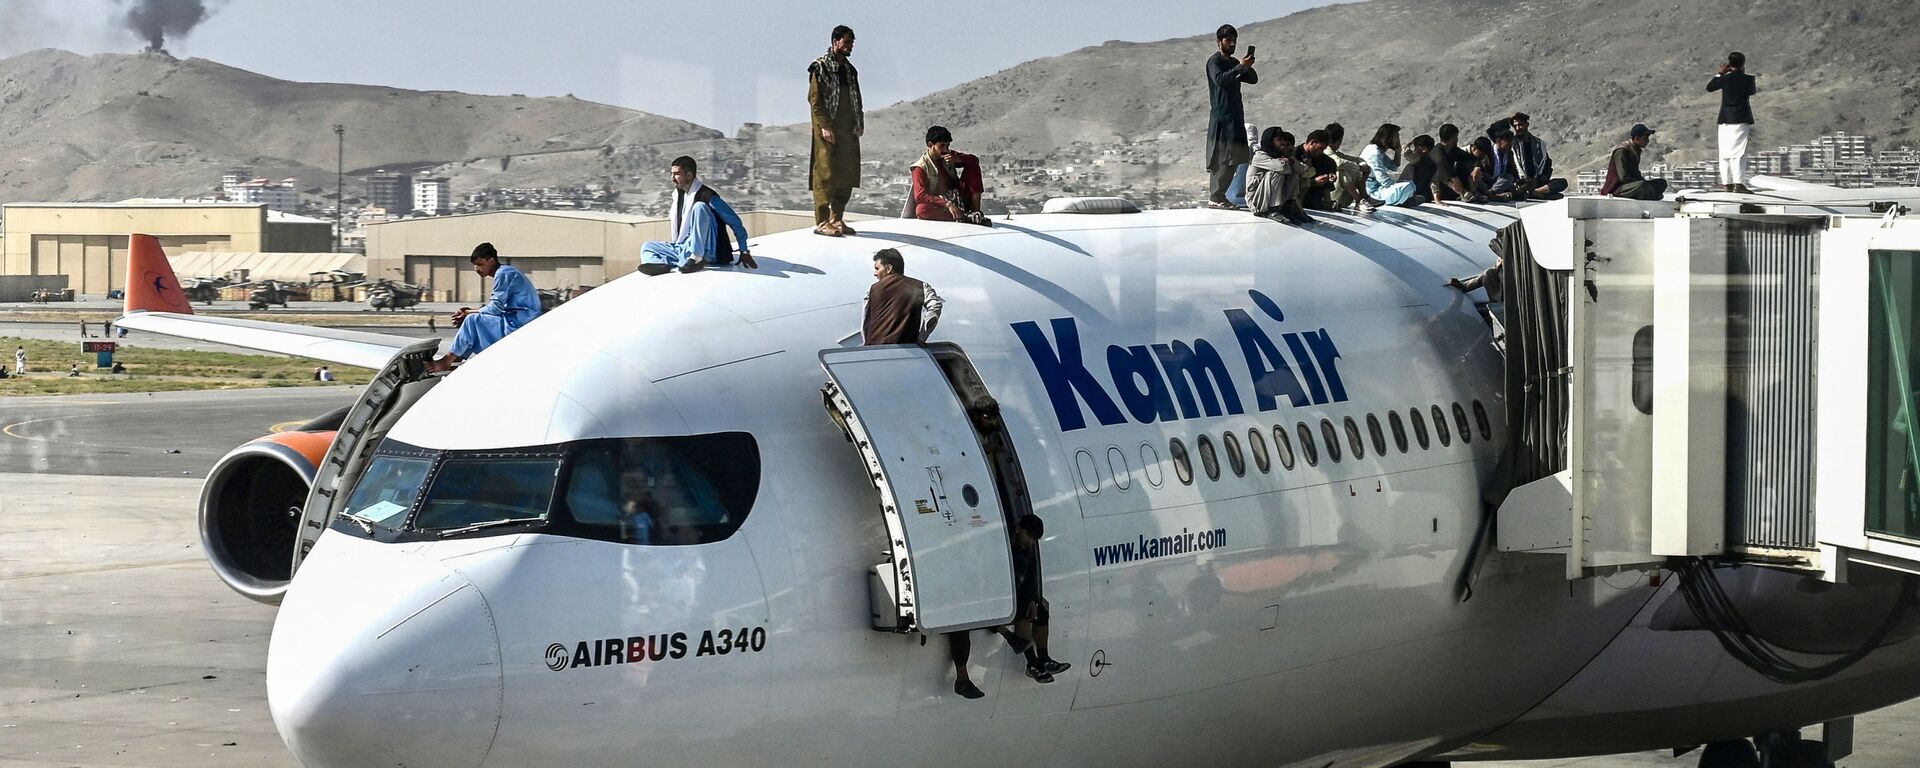 Աֆղանները Քաբուլի օդանավակայանում ինքնաթիռ են վրա են բարձրացել՝ փորձելով փախչել երկրից - Sputnik Արմենիա, 1920, 17.08.2021